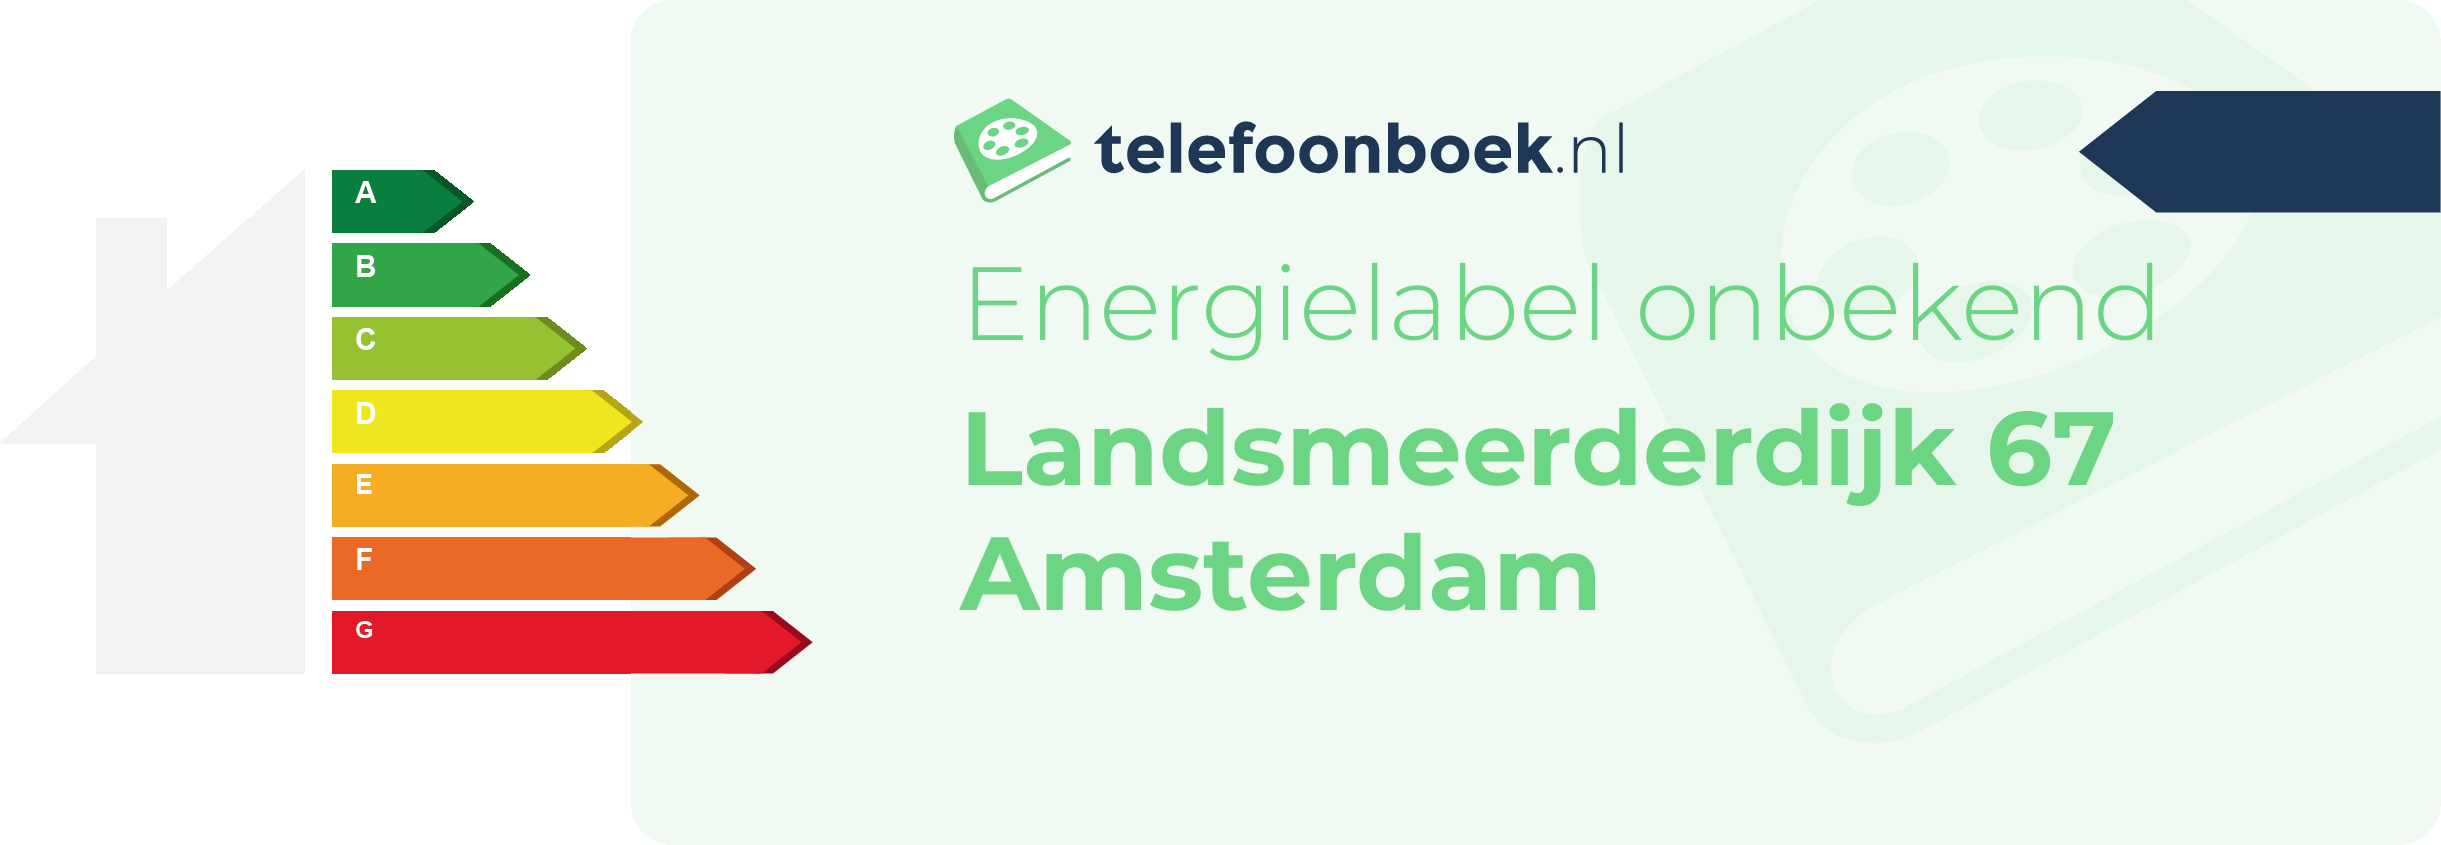 Energielabel Landsmeerderdijk 67 Amsterdam